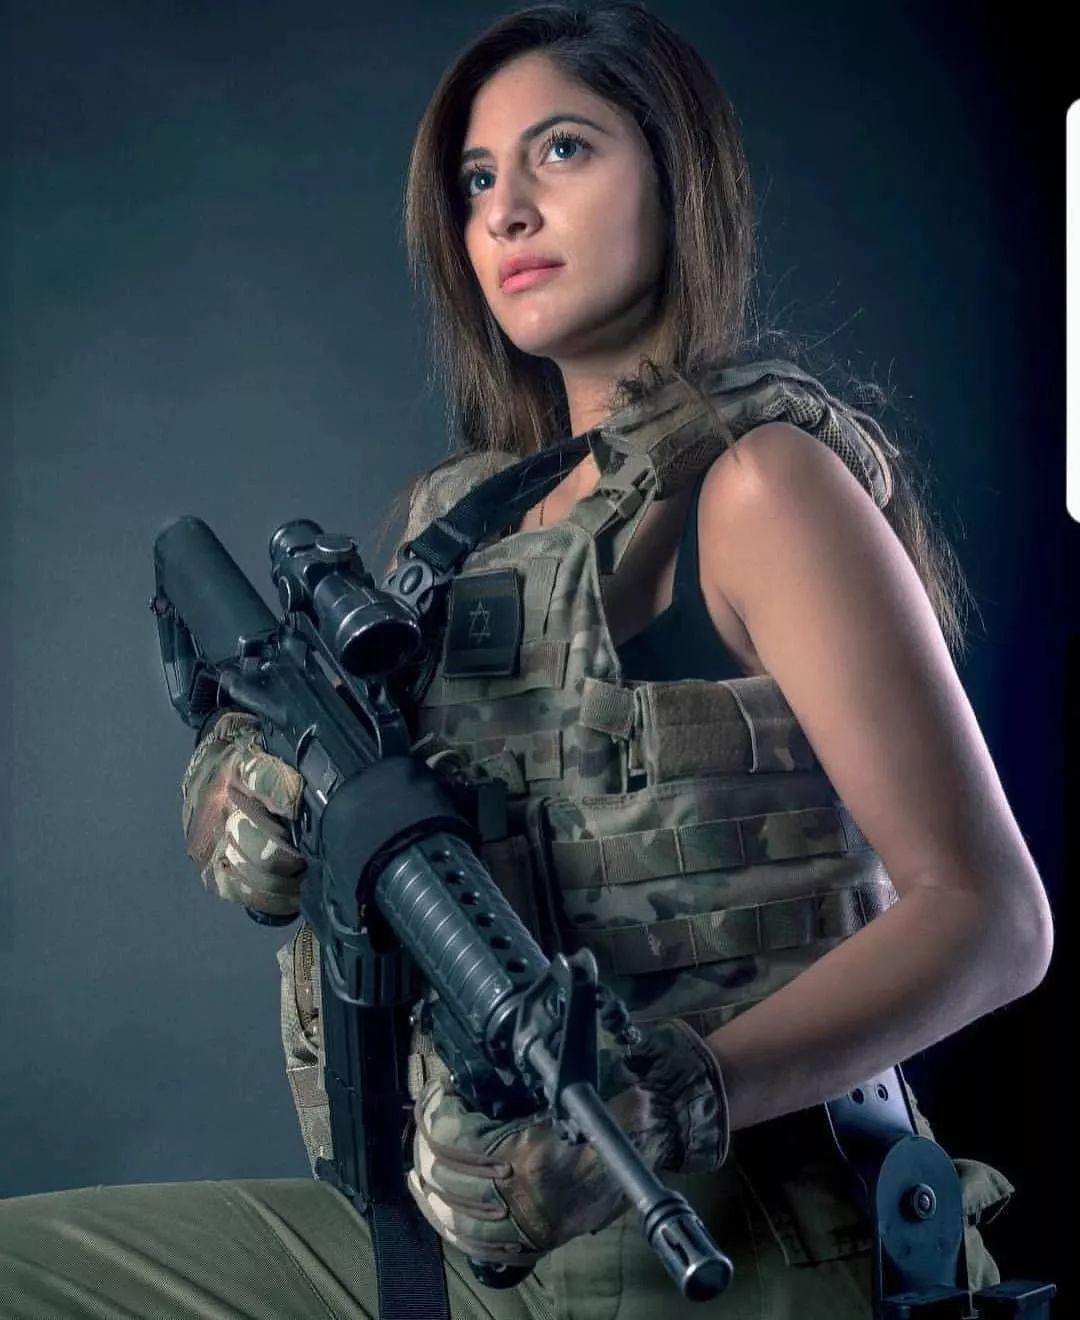 以色列女兵战斗力图片